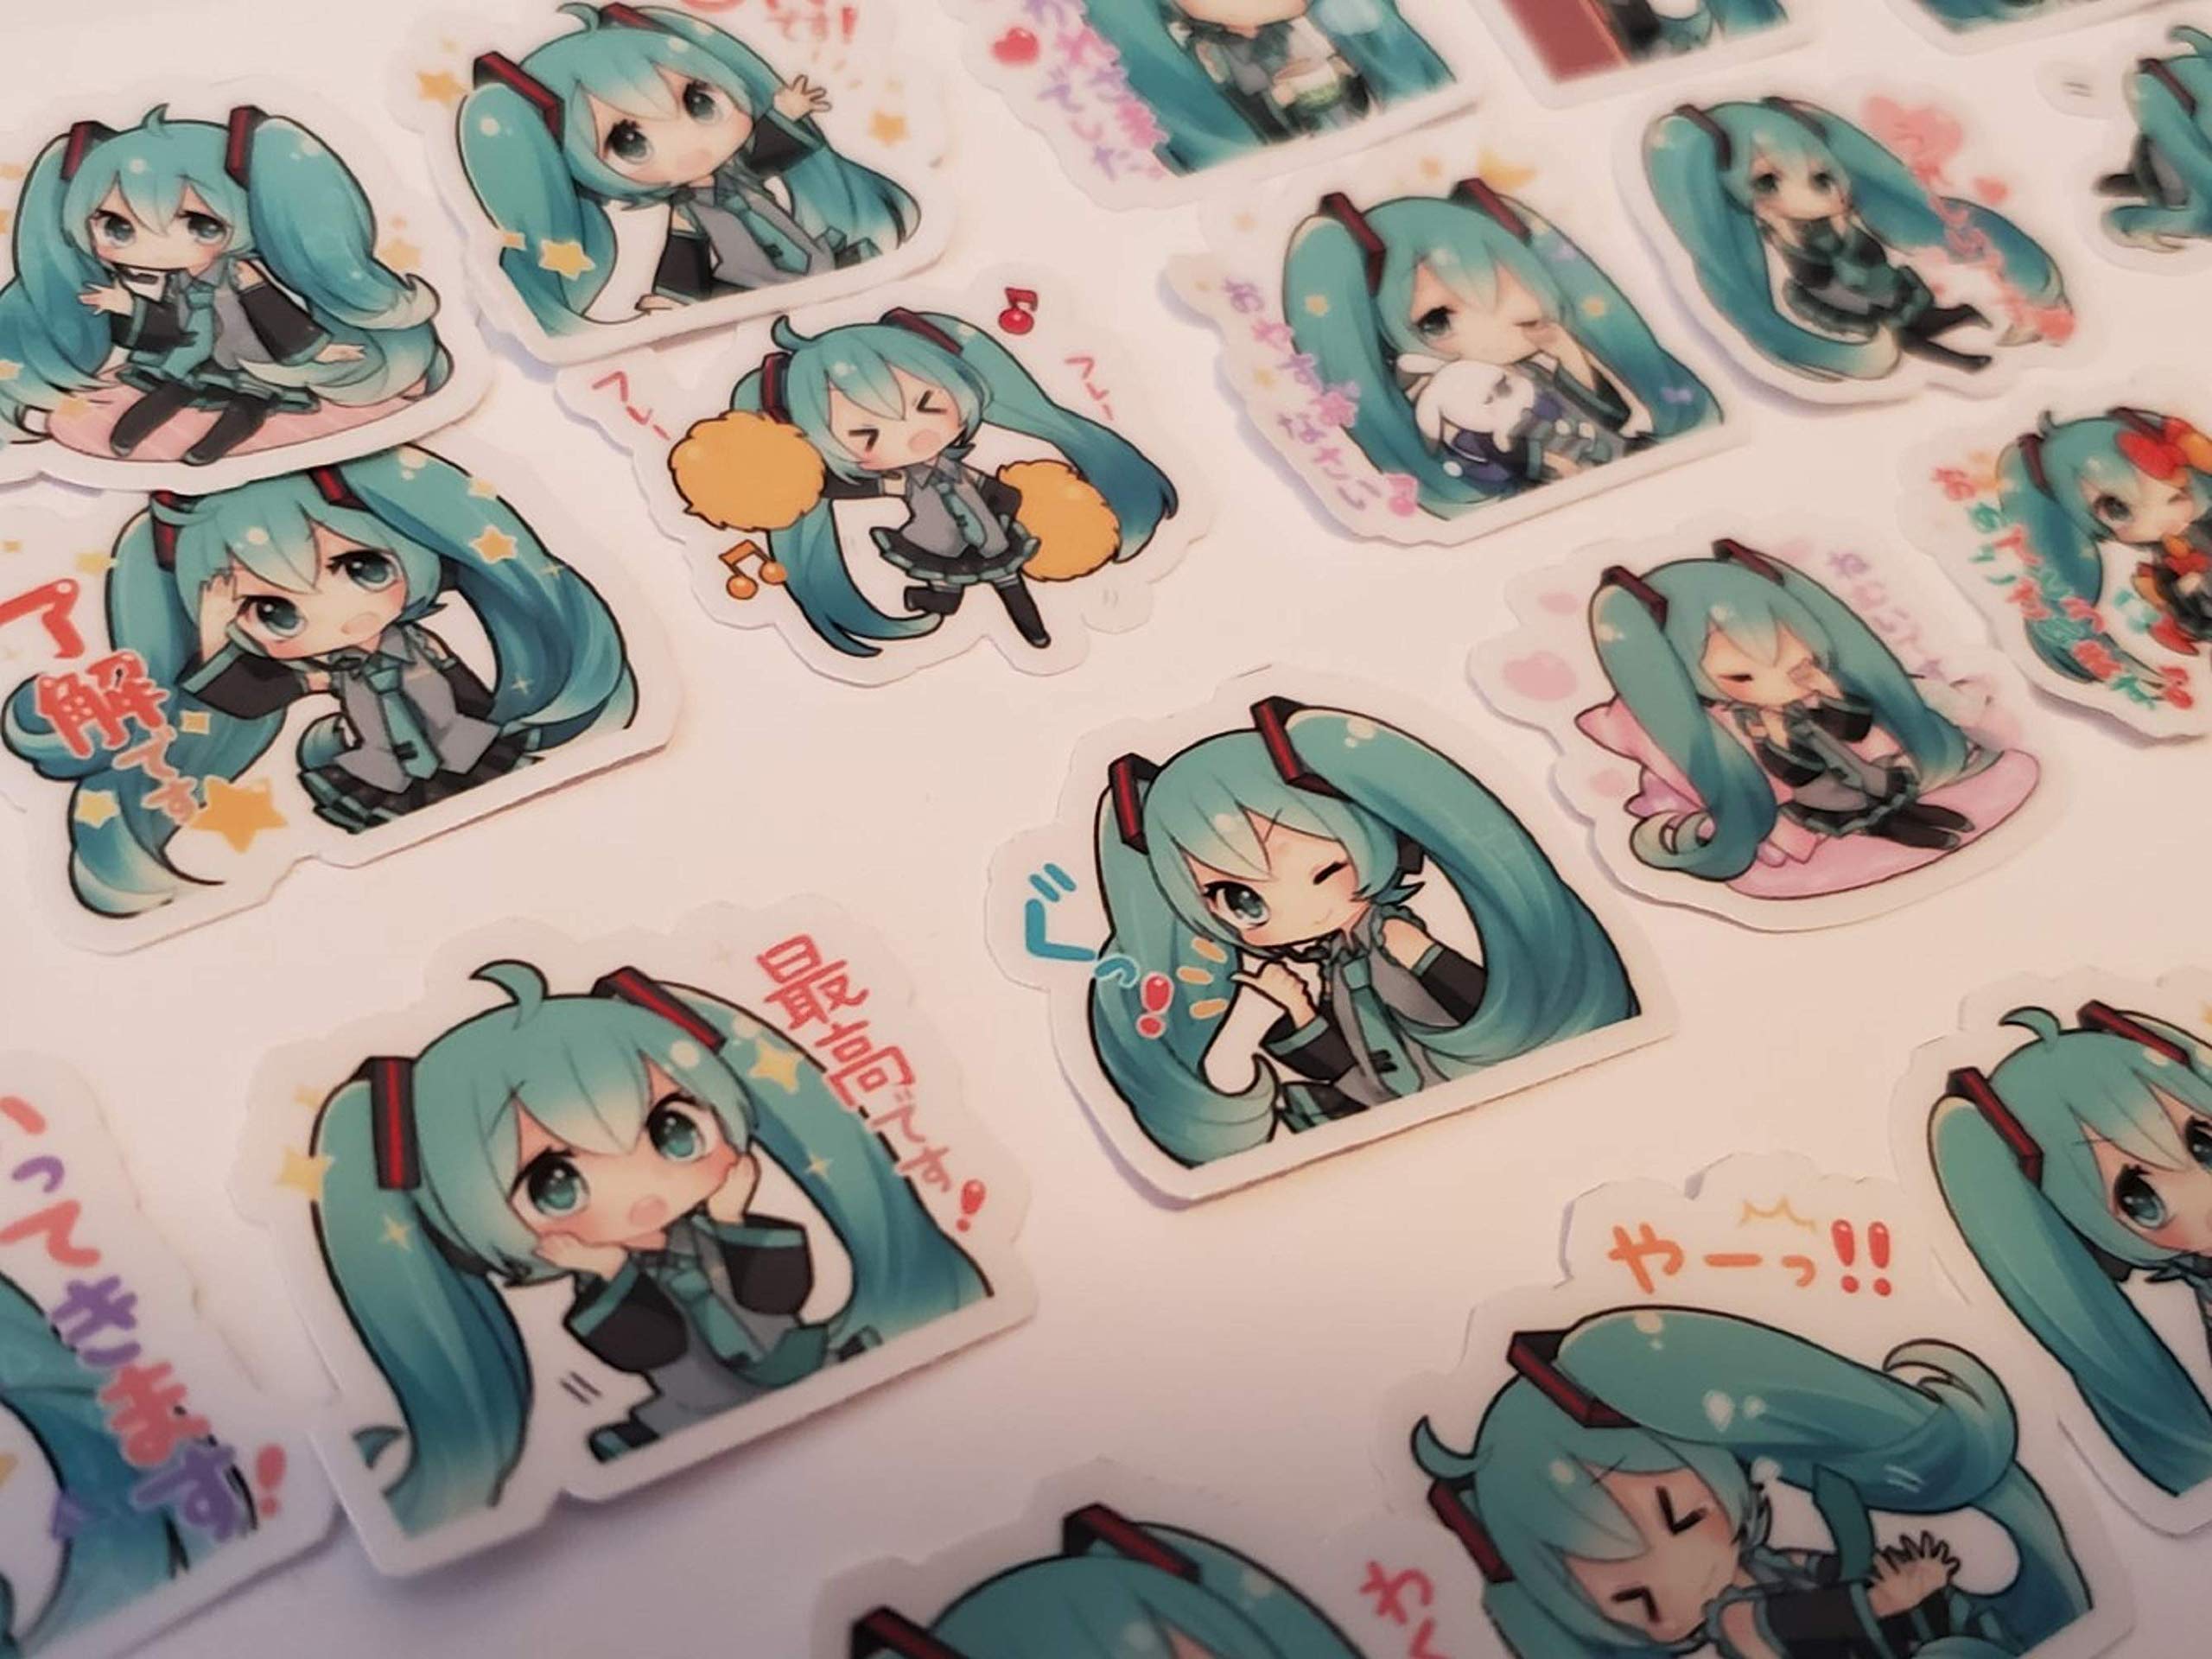 TokiShips Chibi Miku Hatsune Stickers: Nếu bạn là fan Miku Hatsune và thích tạo ra những điểm nhấn đặc biệt cho chiếc laptop hay điện thoại của mình, TokiShips Chibi Miku Hatsune Stickers chính là lựa chọn tuyệt vời nhất. Với hình ảnh Miku được bao phủ bằng phong cách chibi đáng yêu, đây sẽ là một món phụ kiện không thể thiếu cho bất kì fan Miku nào.